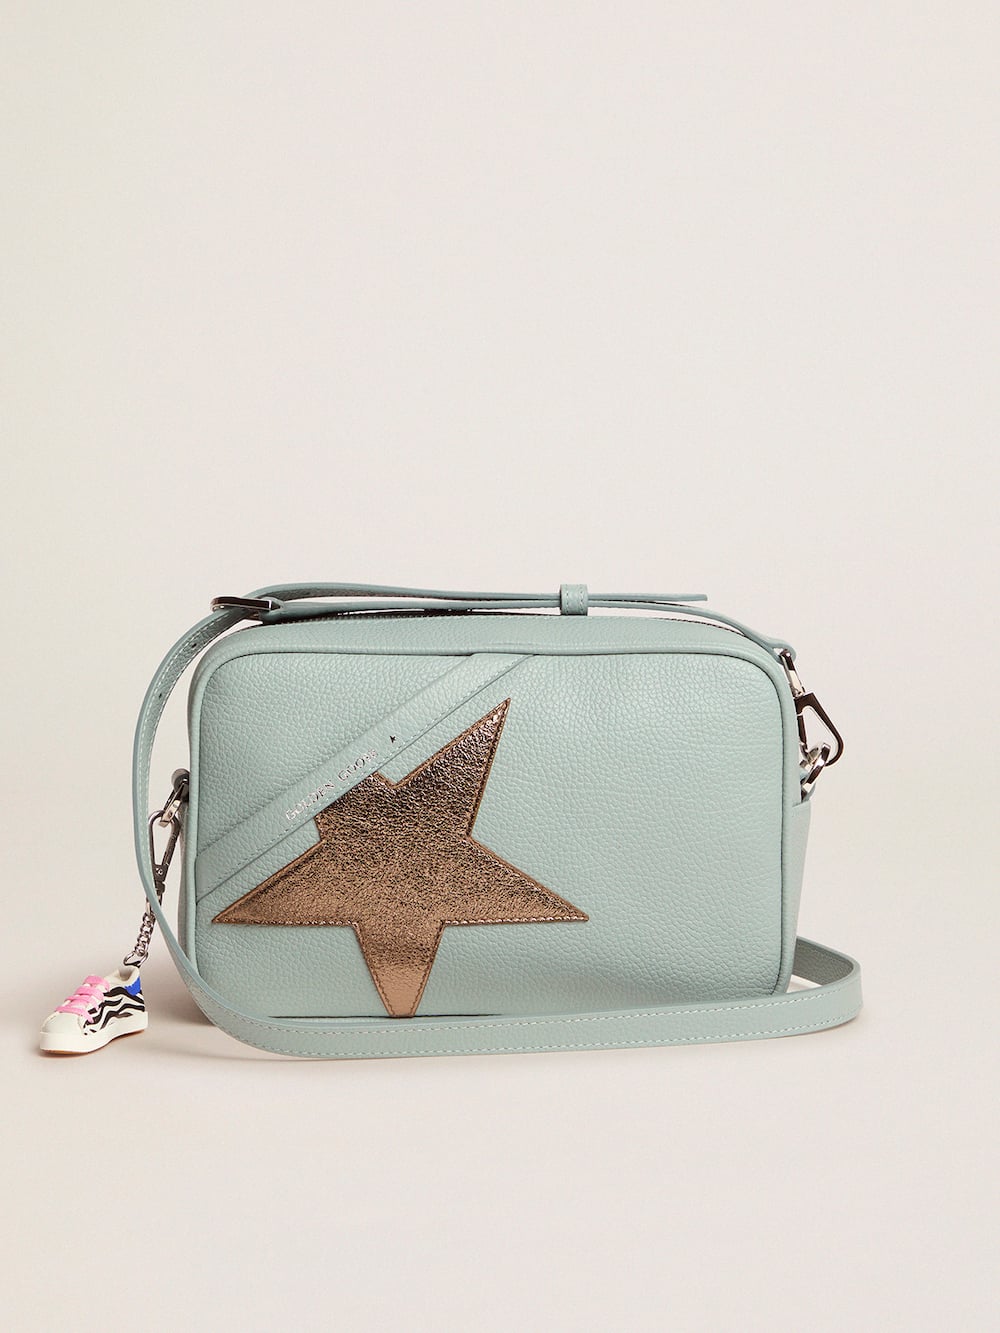 Golden Goose - Aquamarinfarbene Tasche Star Bag aus gewalktem Leder mit dunkelsilbernem Stern in 